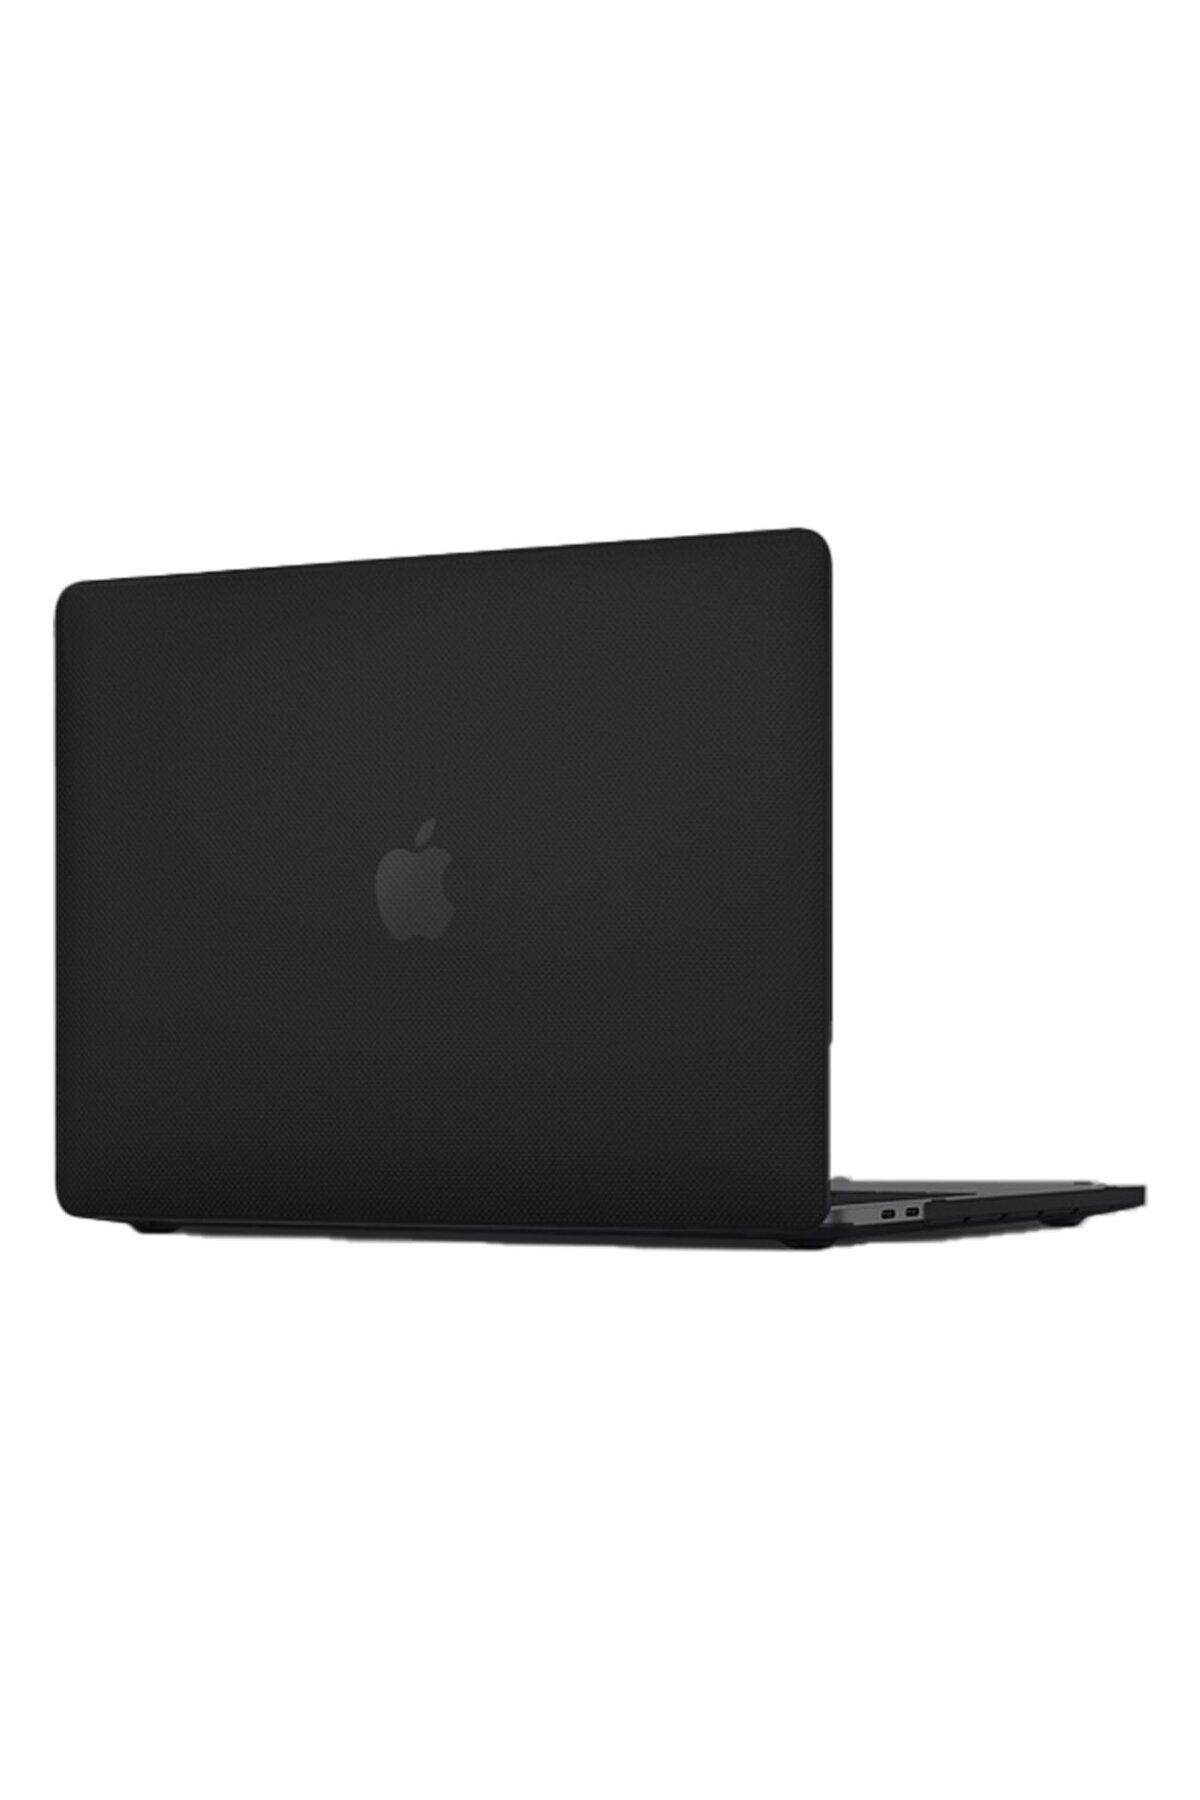 ECOBAZAAR Macbook Pro 13 2020 Macbook Buzlu Kapak